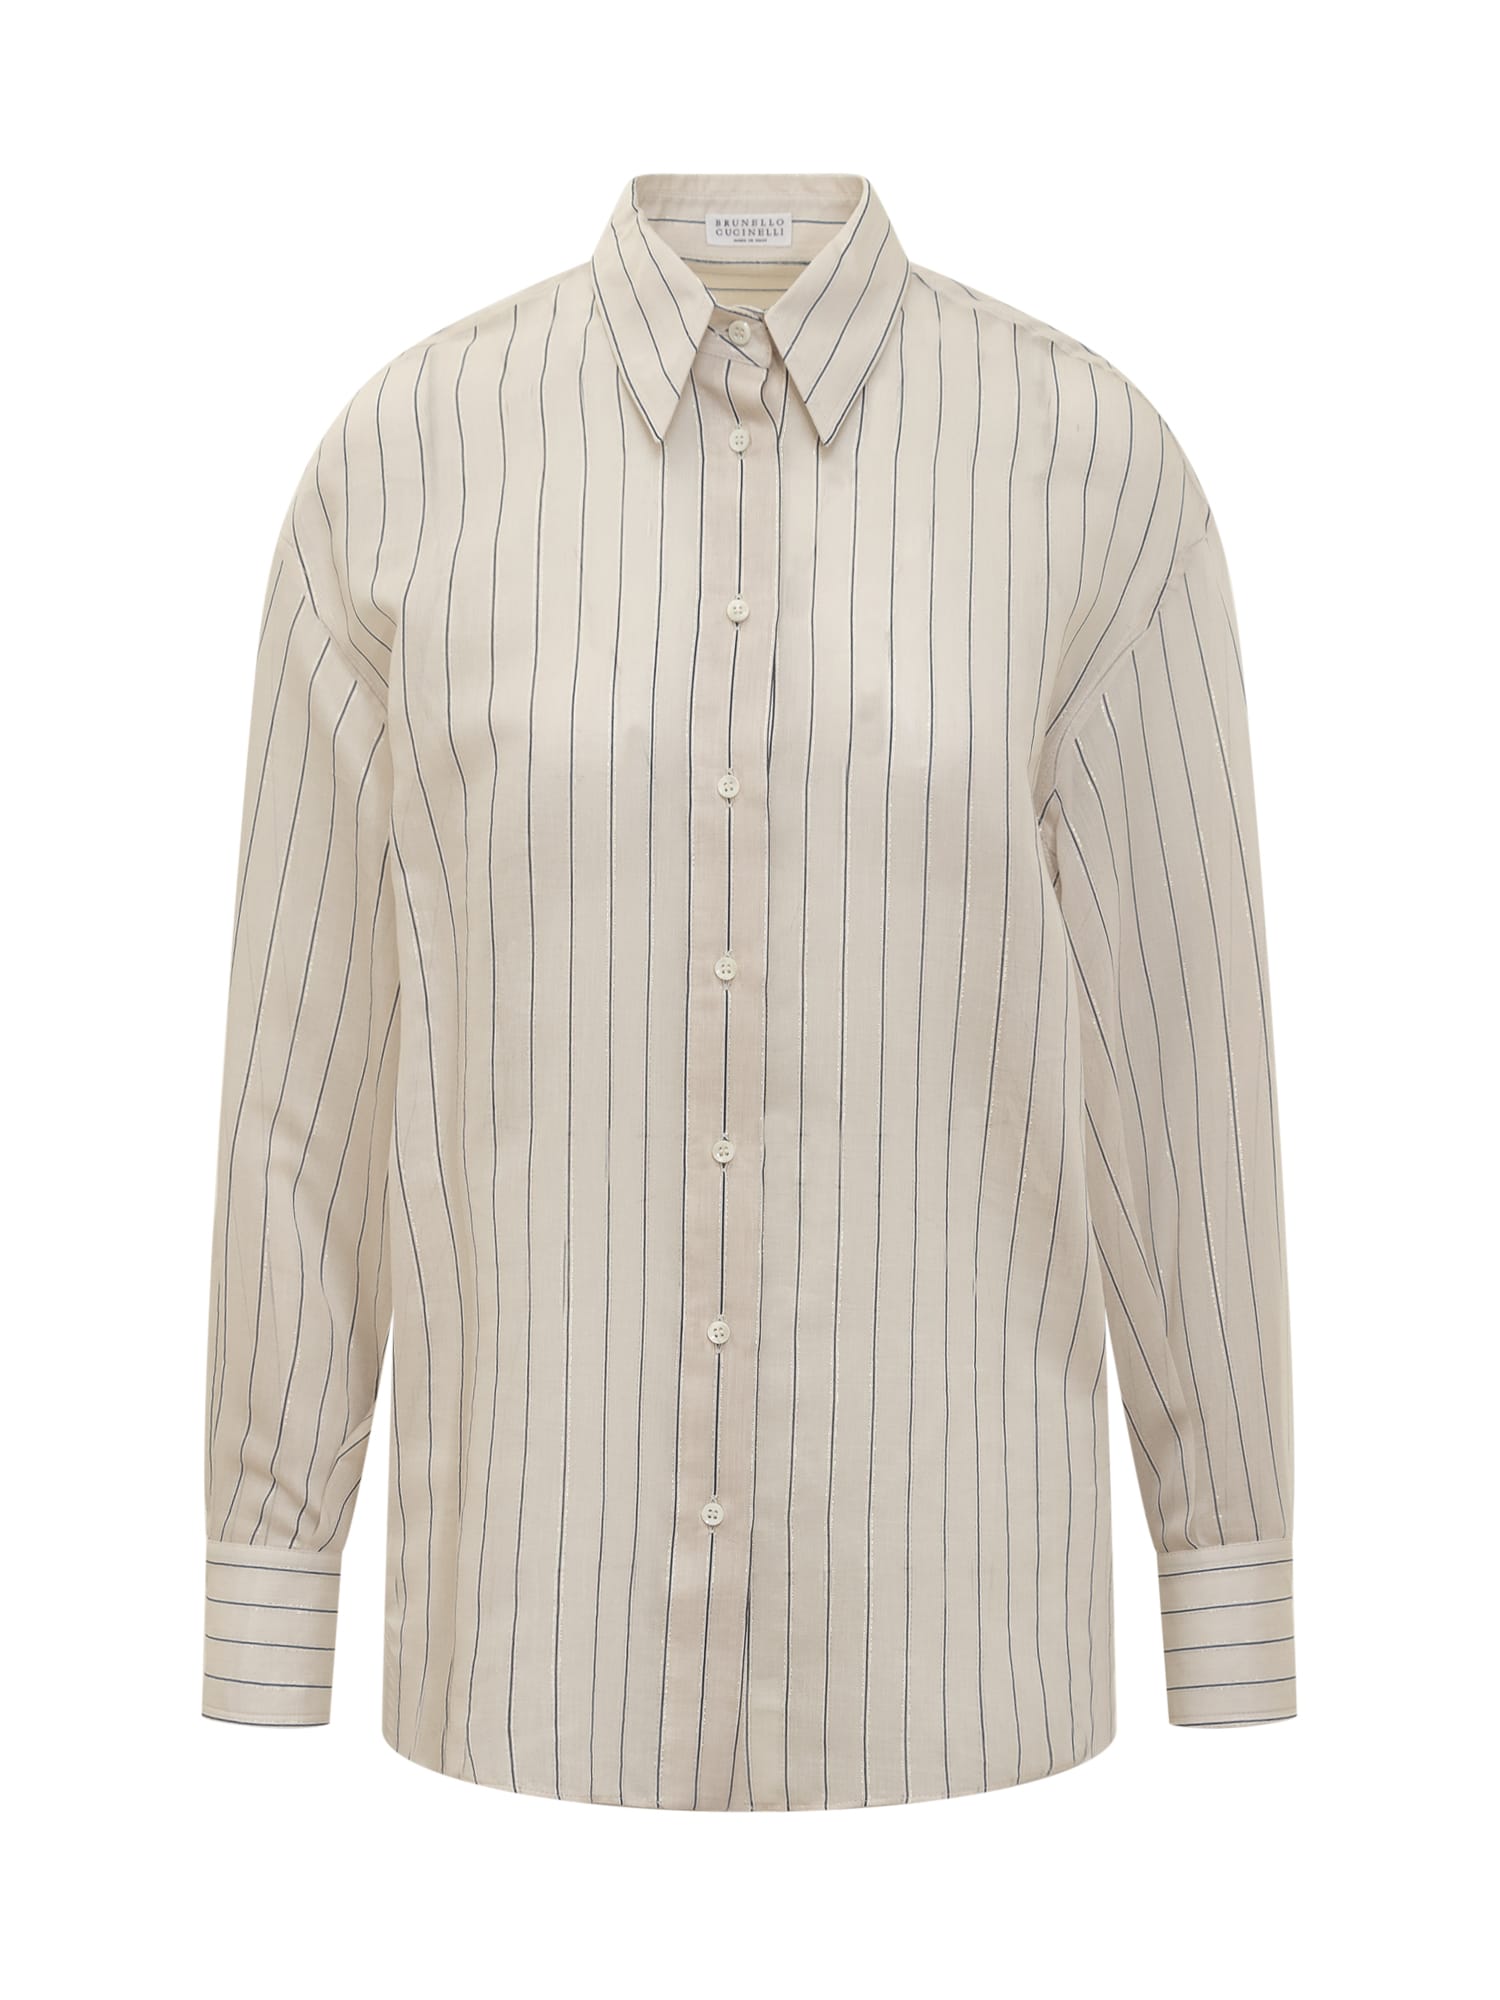 Shop Brunello Cucinelli Cotton And Silk Sparkling Stripe Poplin Shirt With Monile In Salgemma/bianco/nero